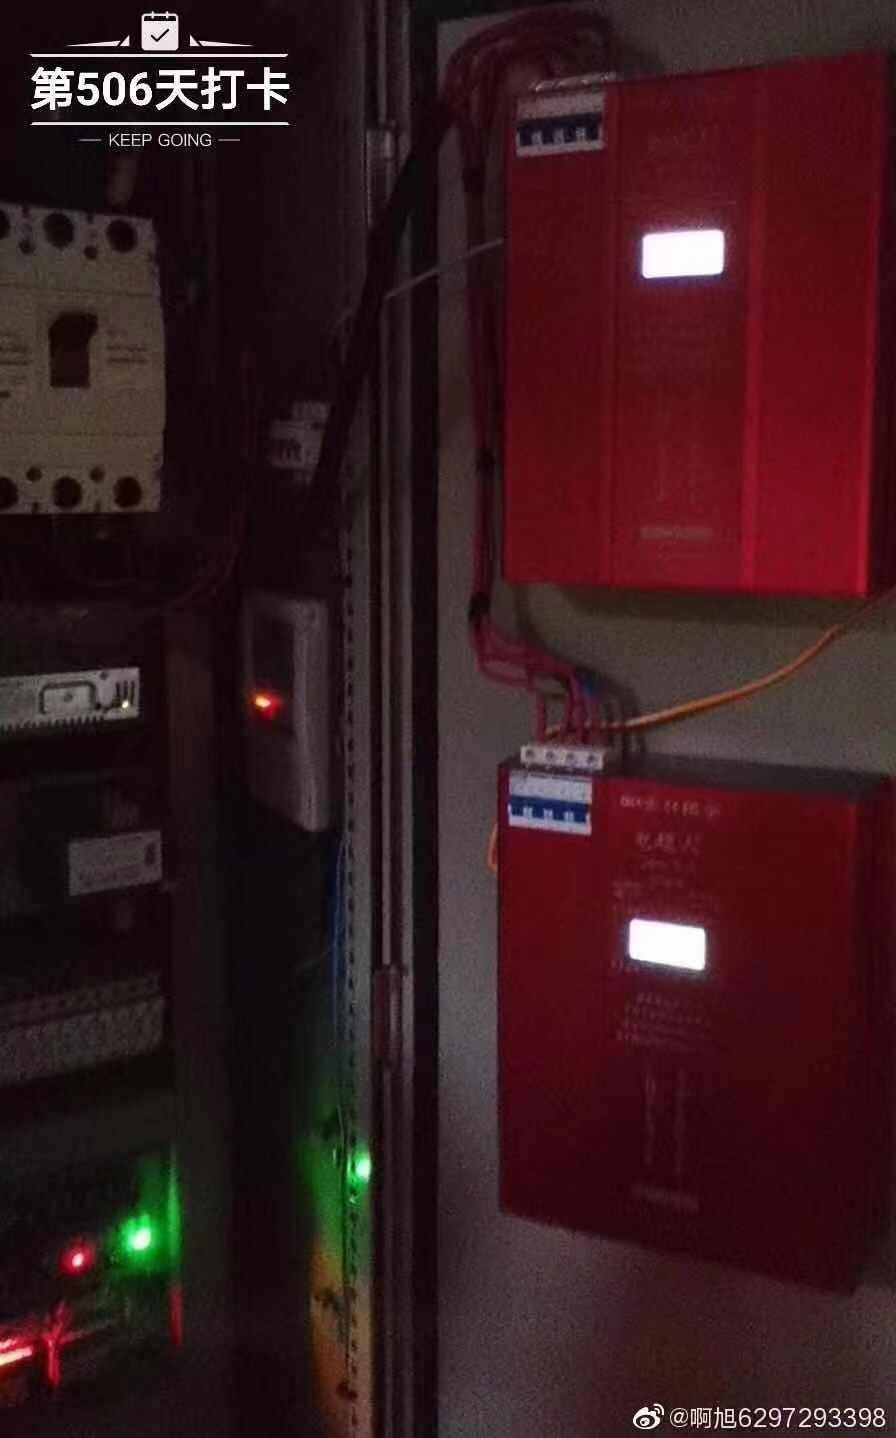 重庆昱轲星电超人家用节电稳压器省电智能节电装置